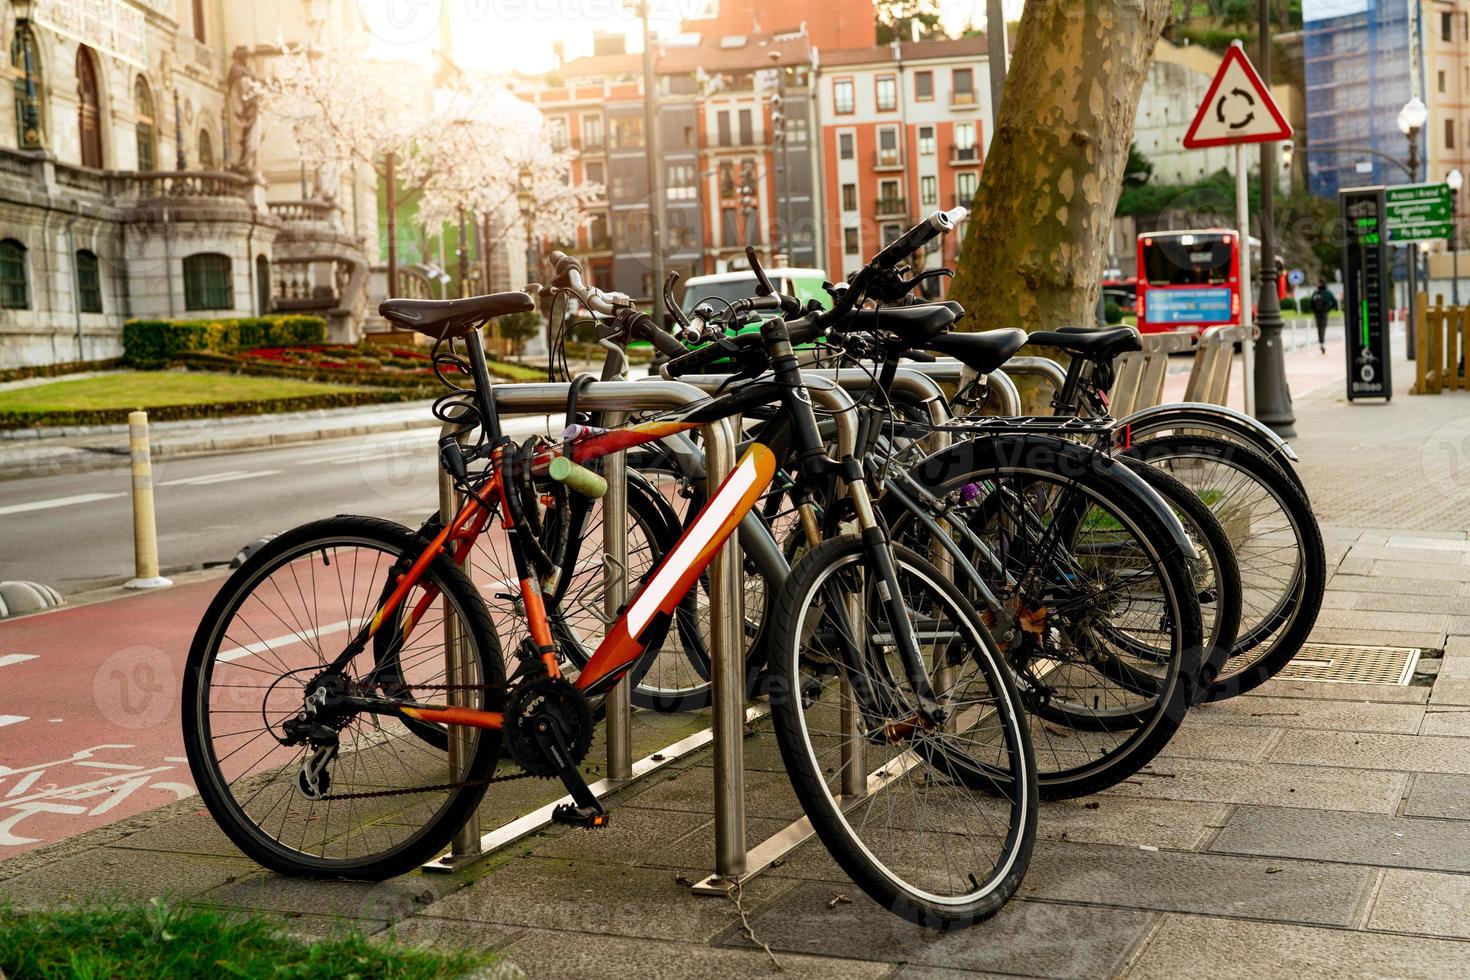 vélo à la station de vélo à louer pour voyager ou se déplacer dans la ville. voyage durable. système de partage de vélos. vélo pour tour de ville à la station de stationnement pour vélos. transports écologiques. transports urbains. photo